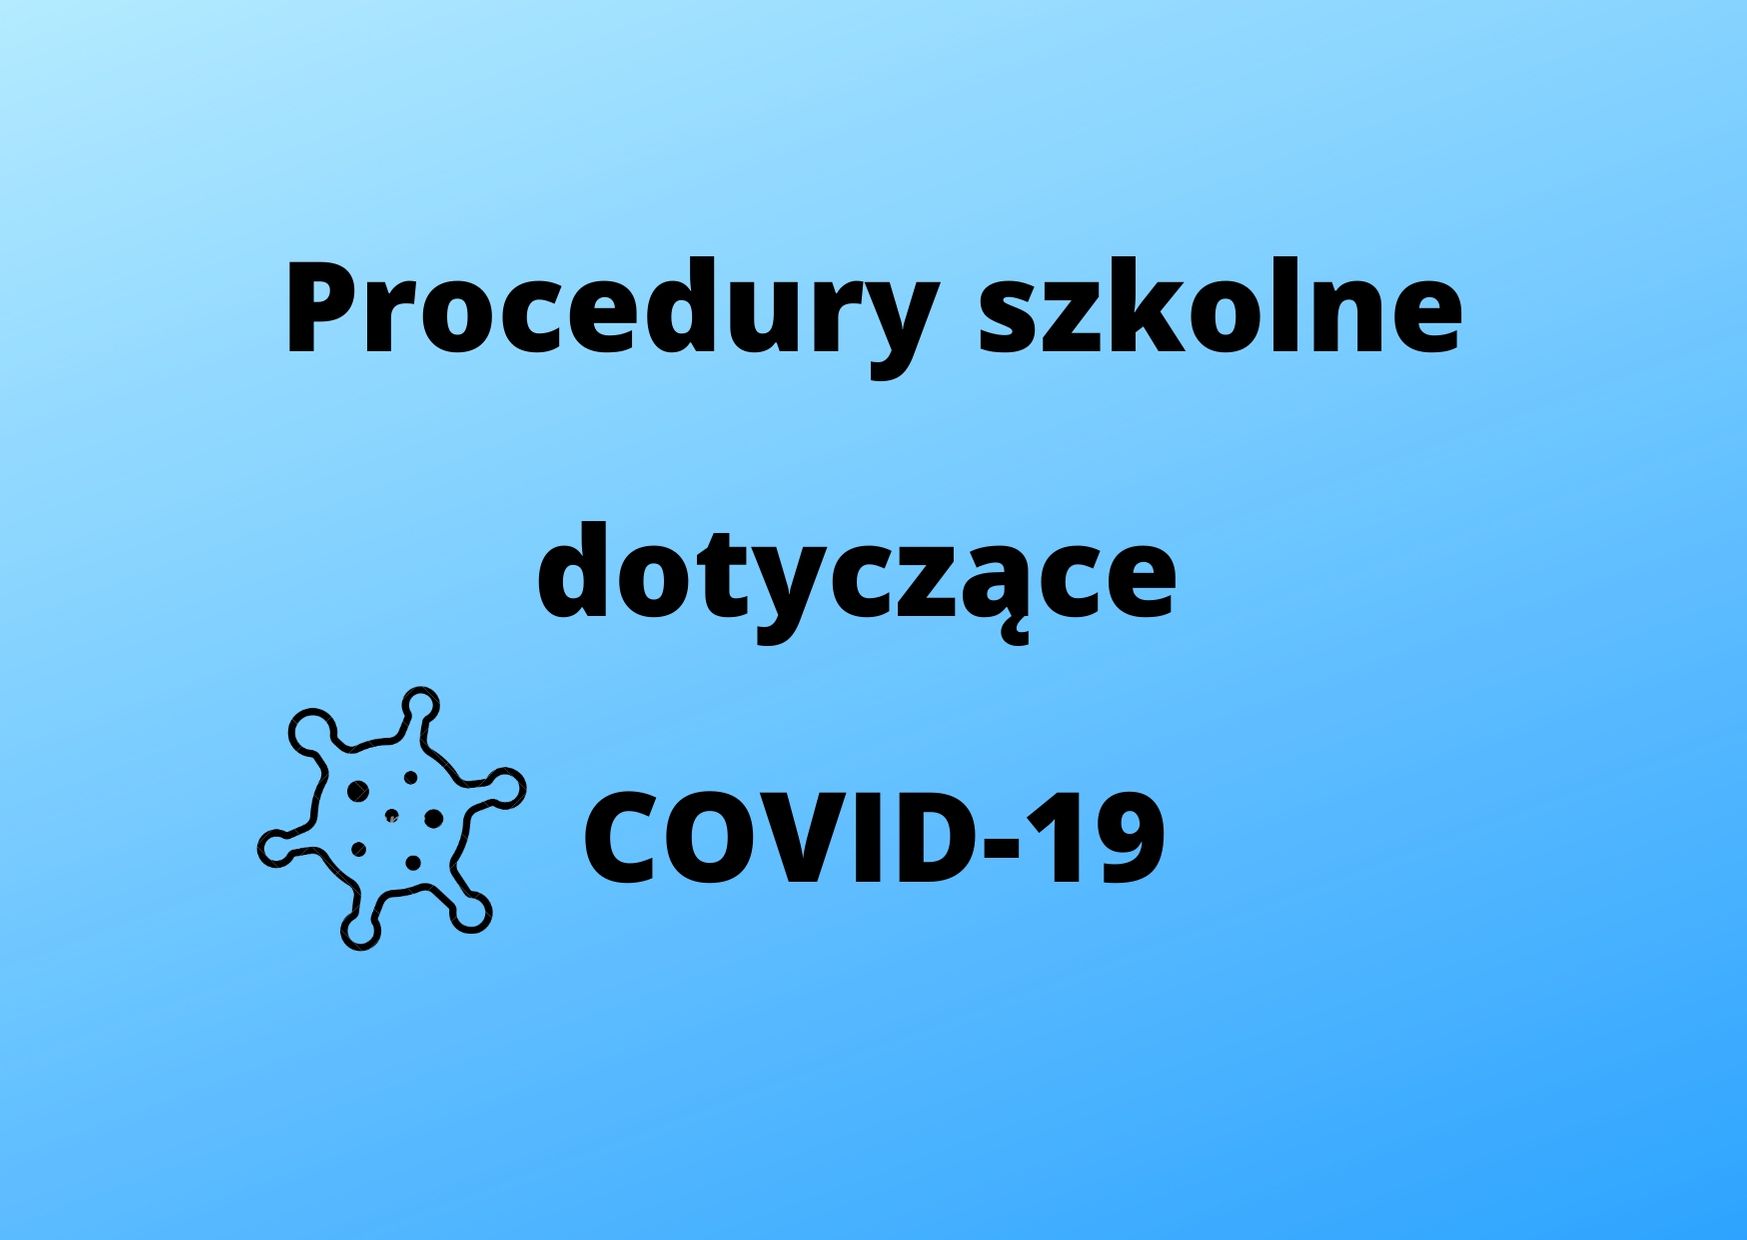 Procedury zapewniania bezpieczeństwa w związku z wystąpieniem epidemii COVID-19.